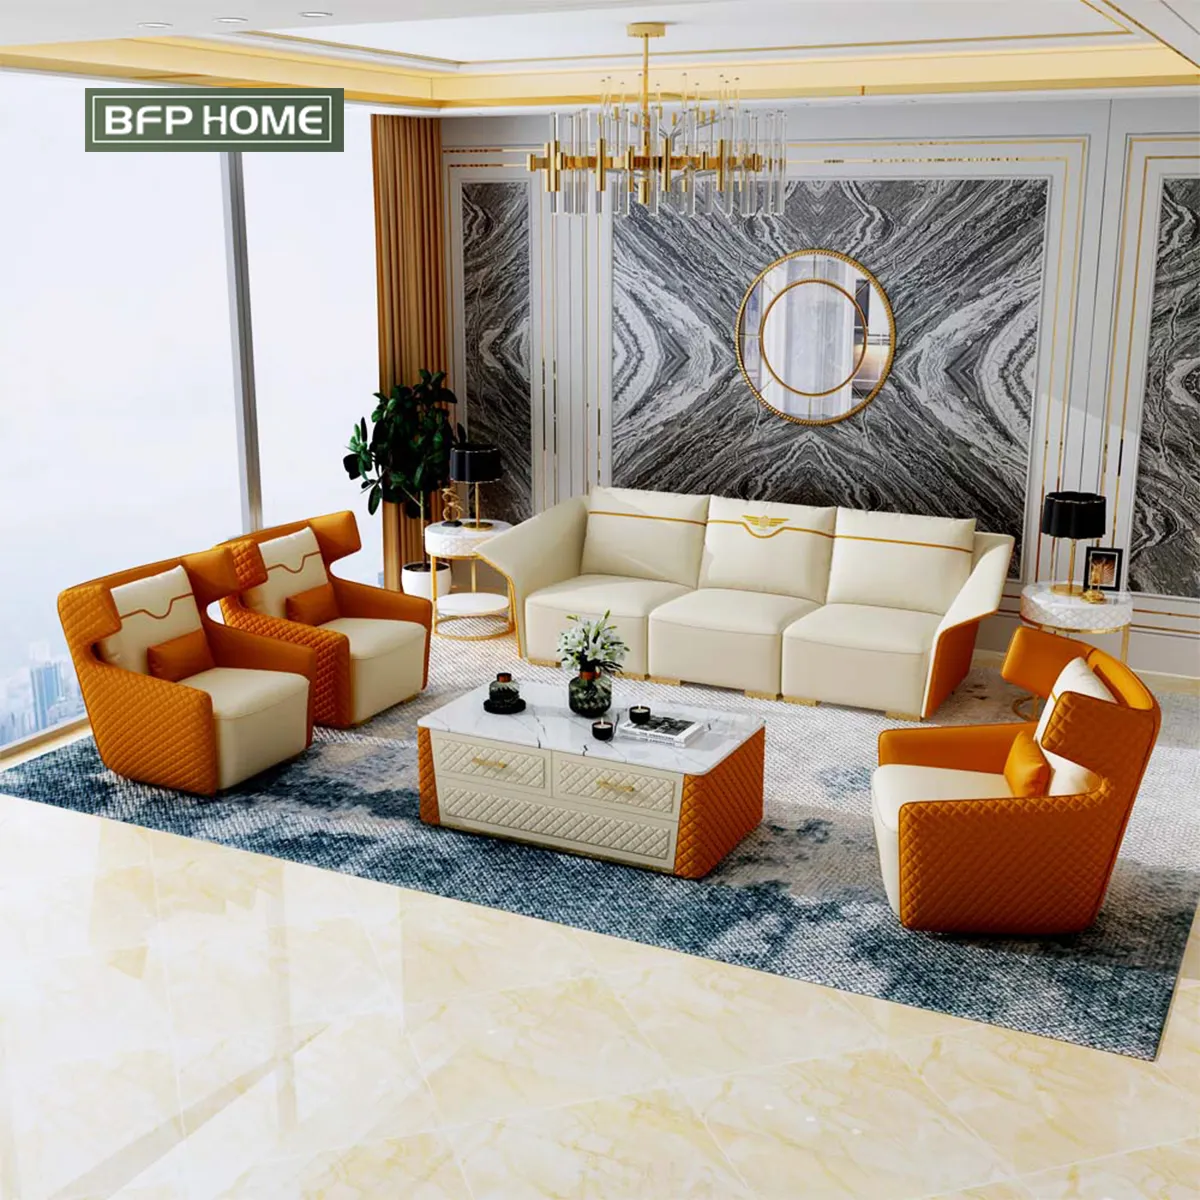 BFP Modern lüks stil turuncu koltuk takımı tasarımları hakiki deri kanepeler mobilya sadelik oturma odası kanepe